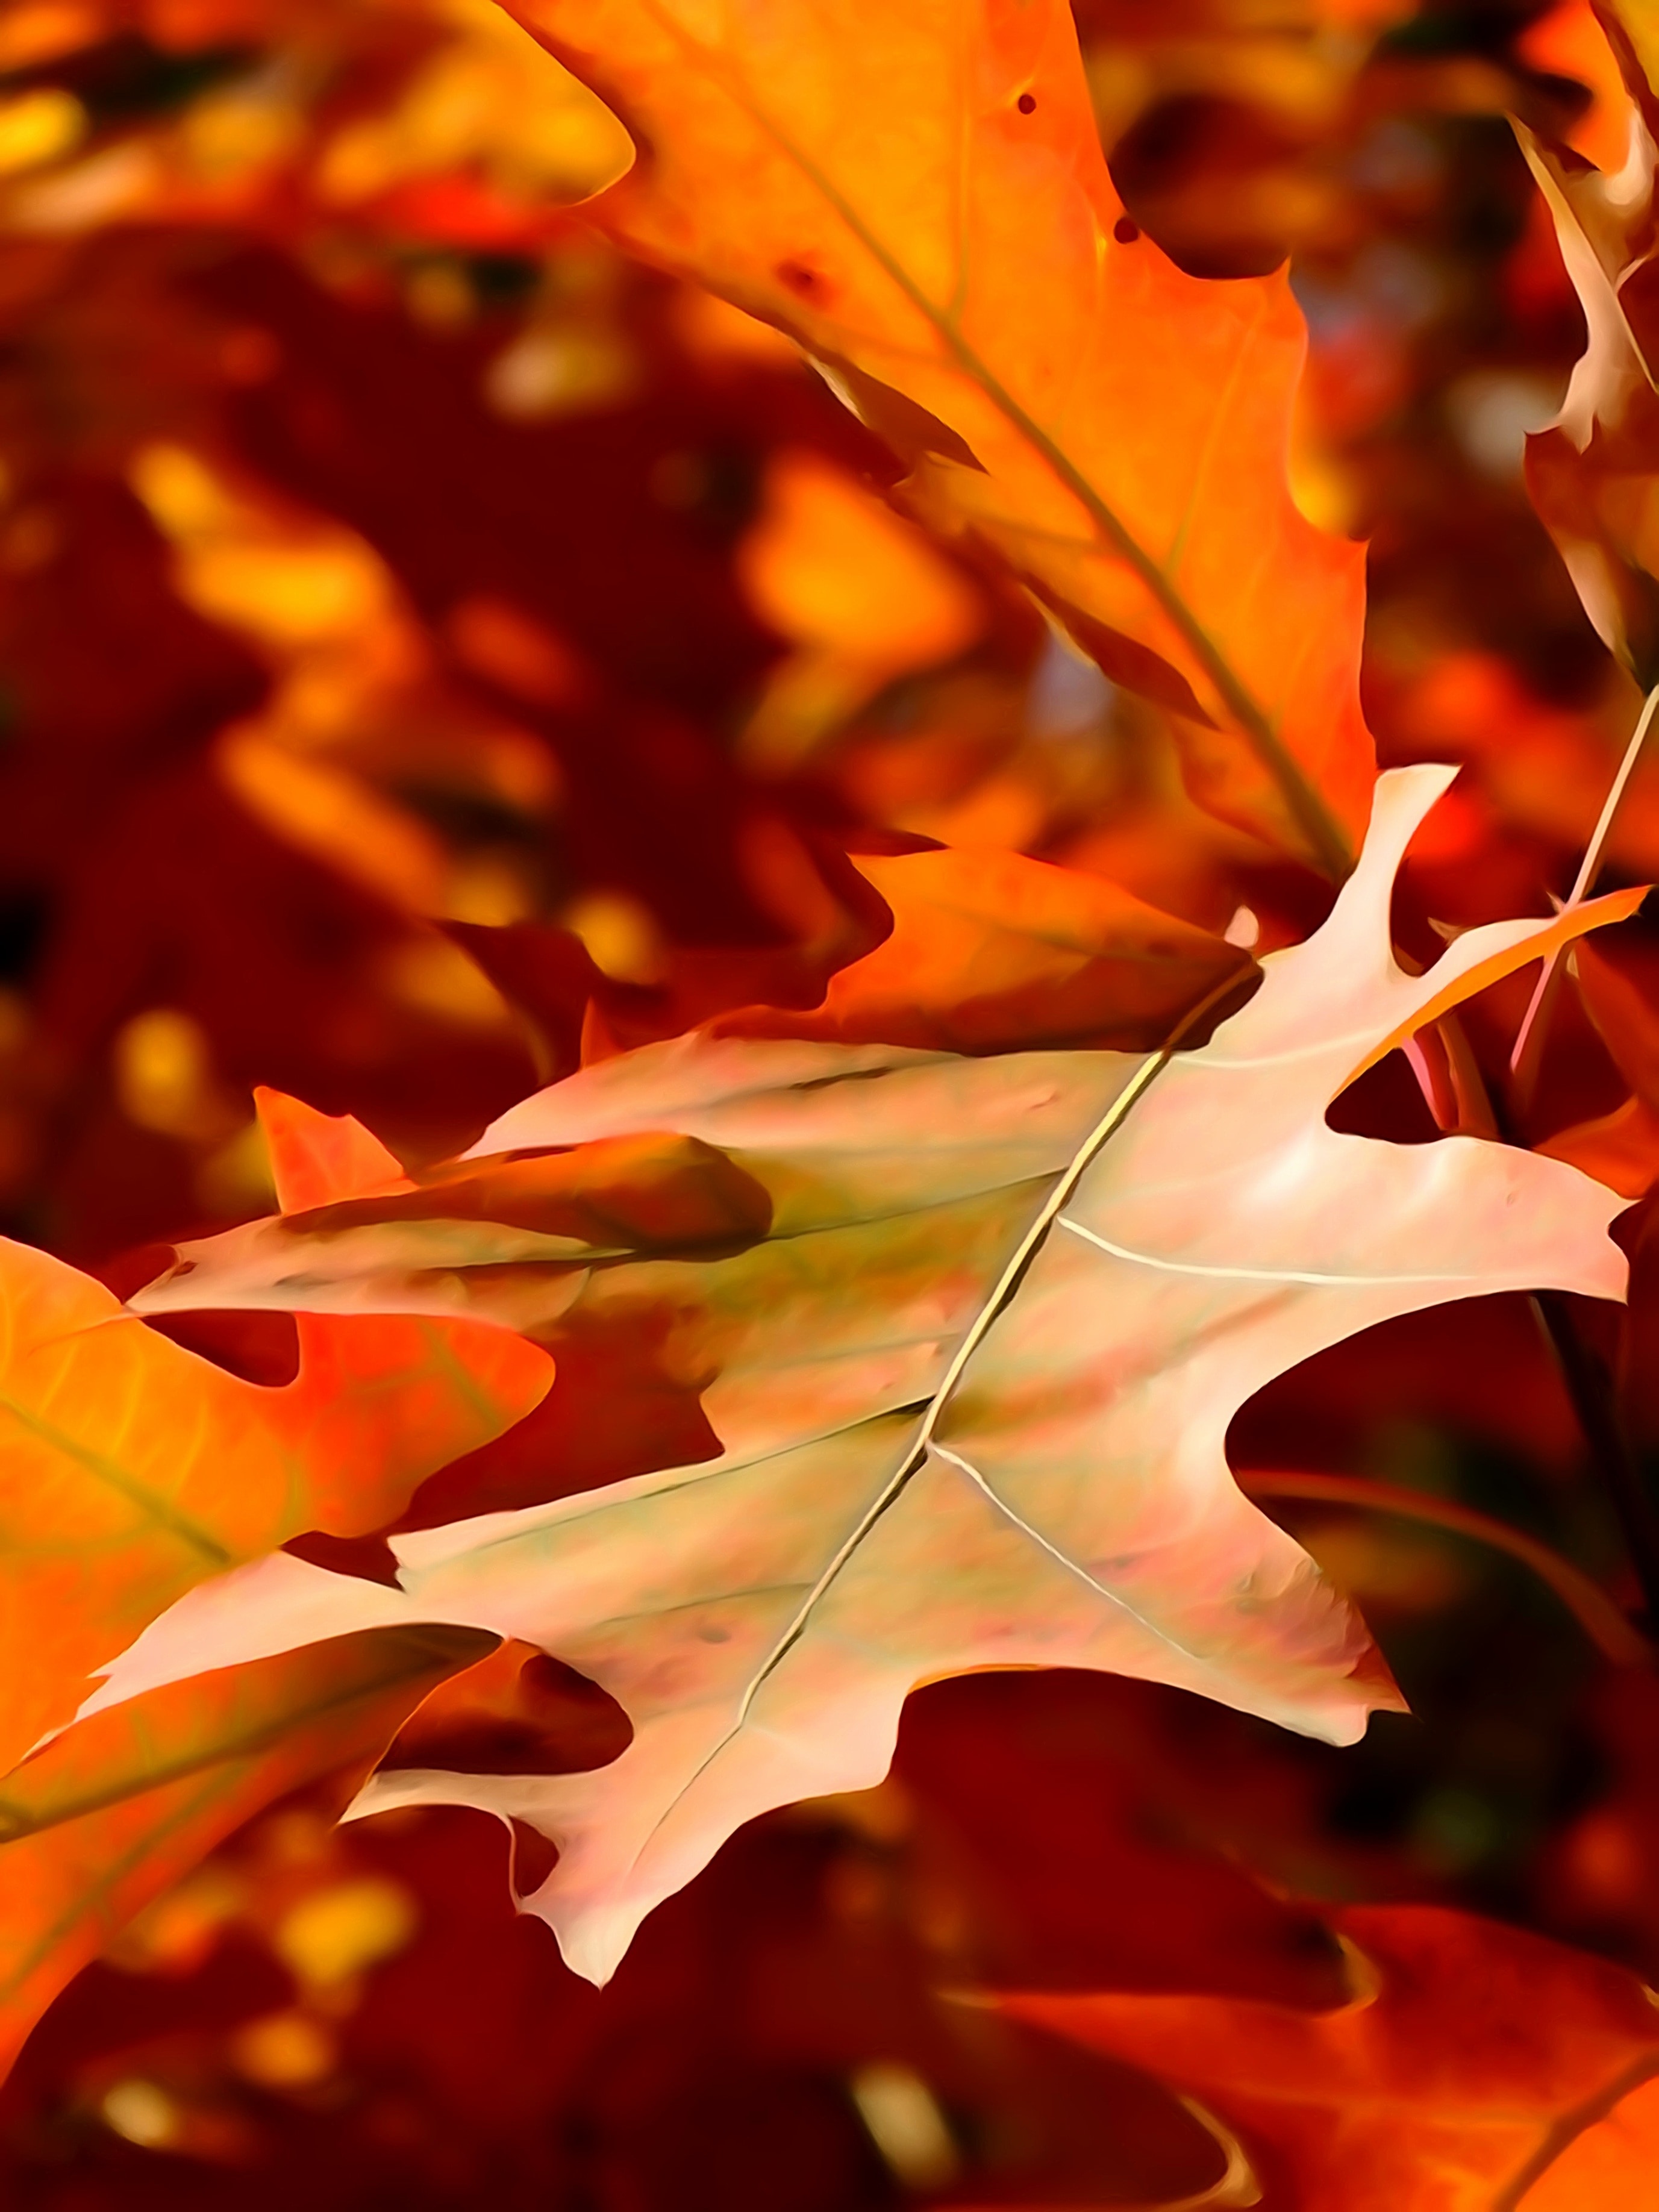 Leaf, Autumn, The Decrease In, Orange, leaf, autumn